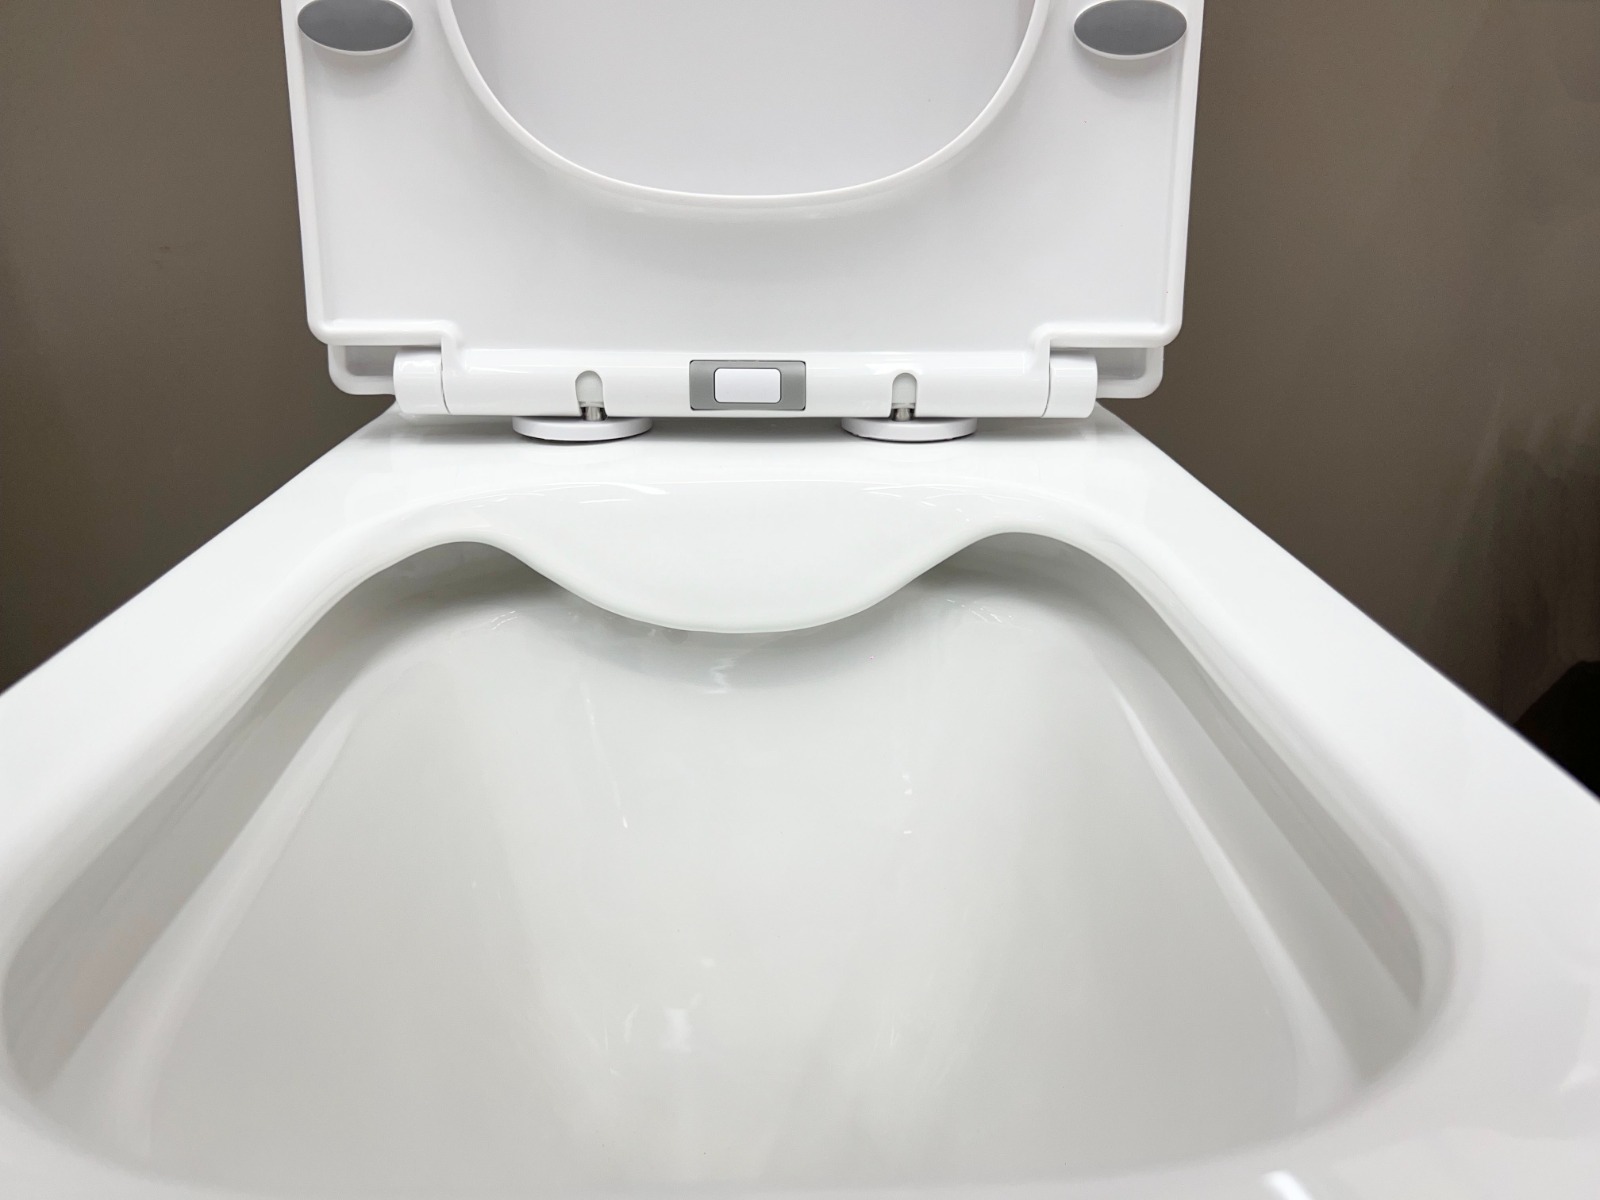 Ekos White Silk Close Couple P-Trap Toilet Open Pan